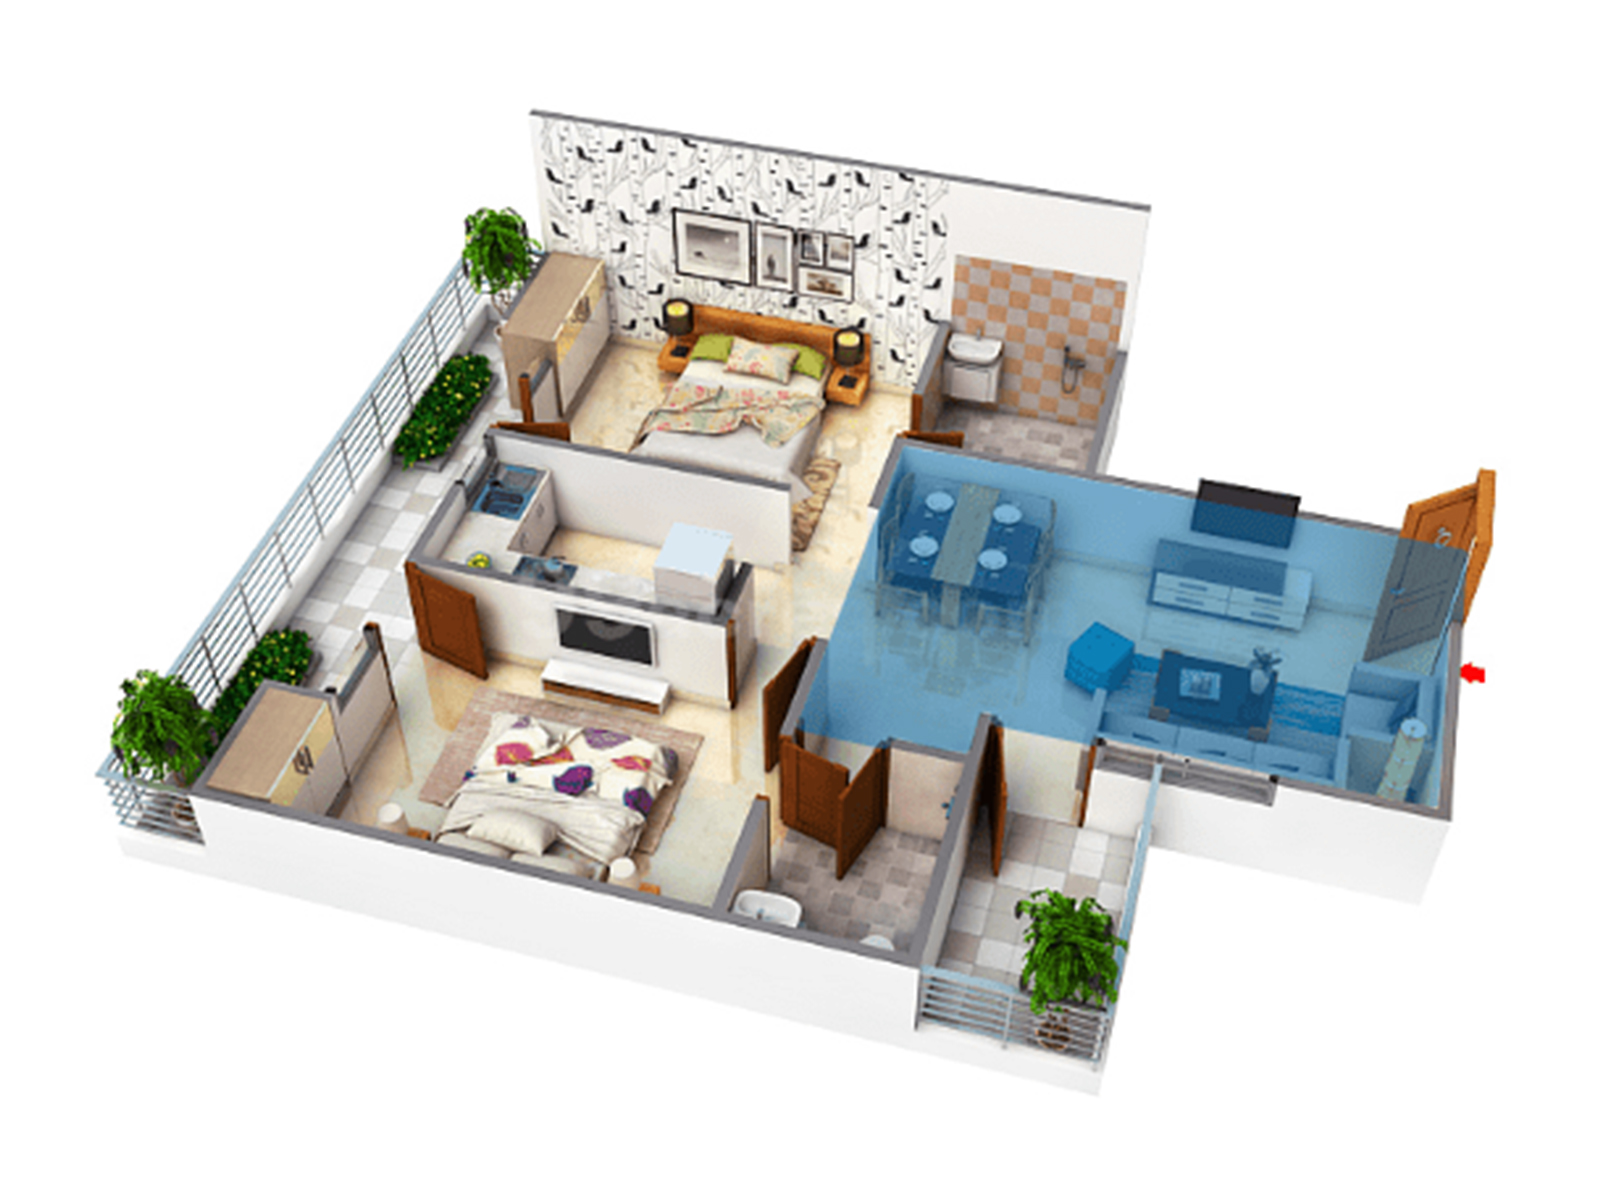 2 BHK Floor Plan of Saya Desire Residency - Buy Luxury Apartments in Indirapuram Ghaziabad